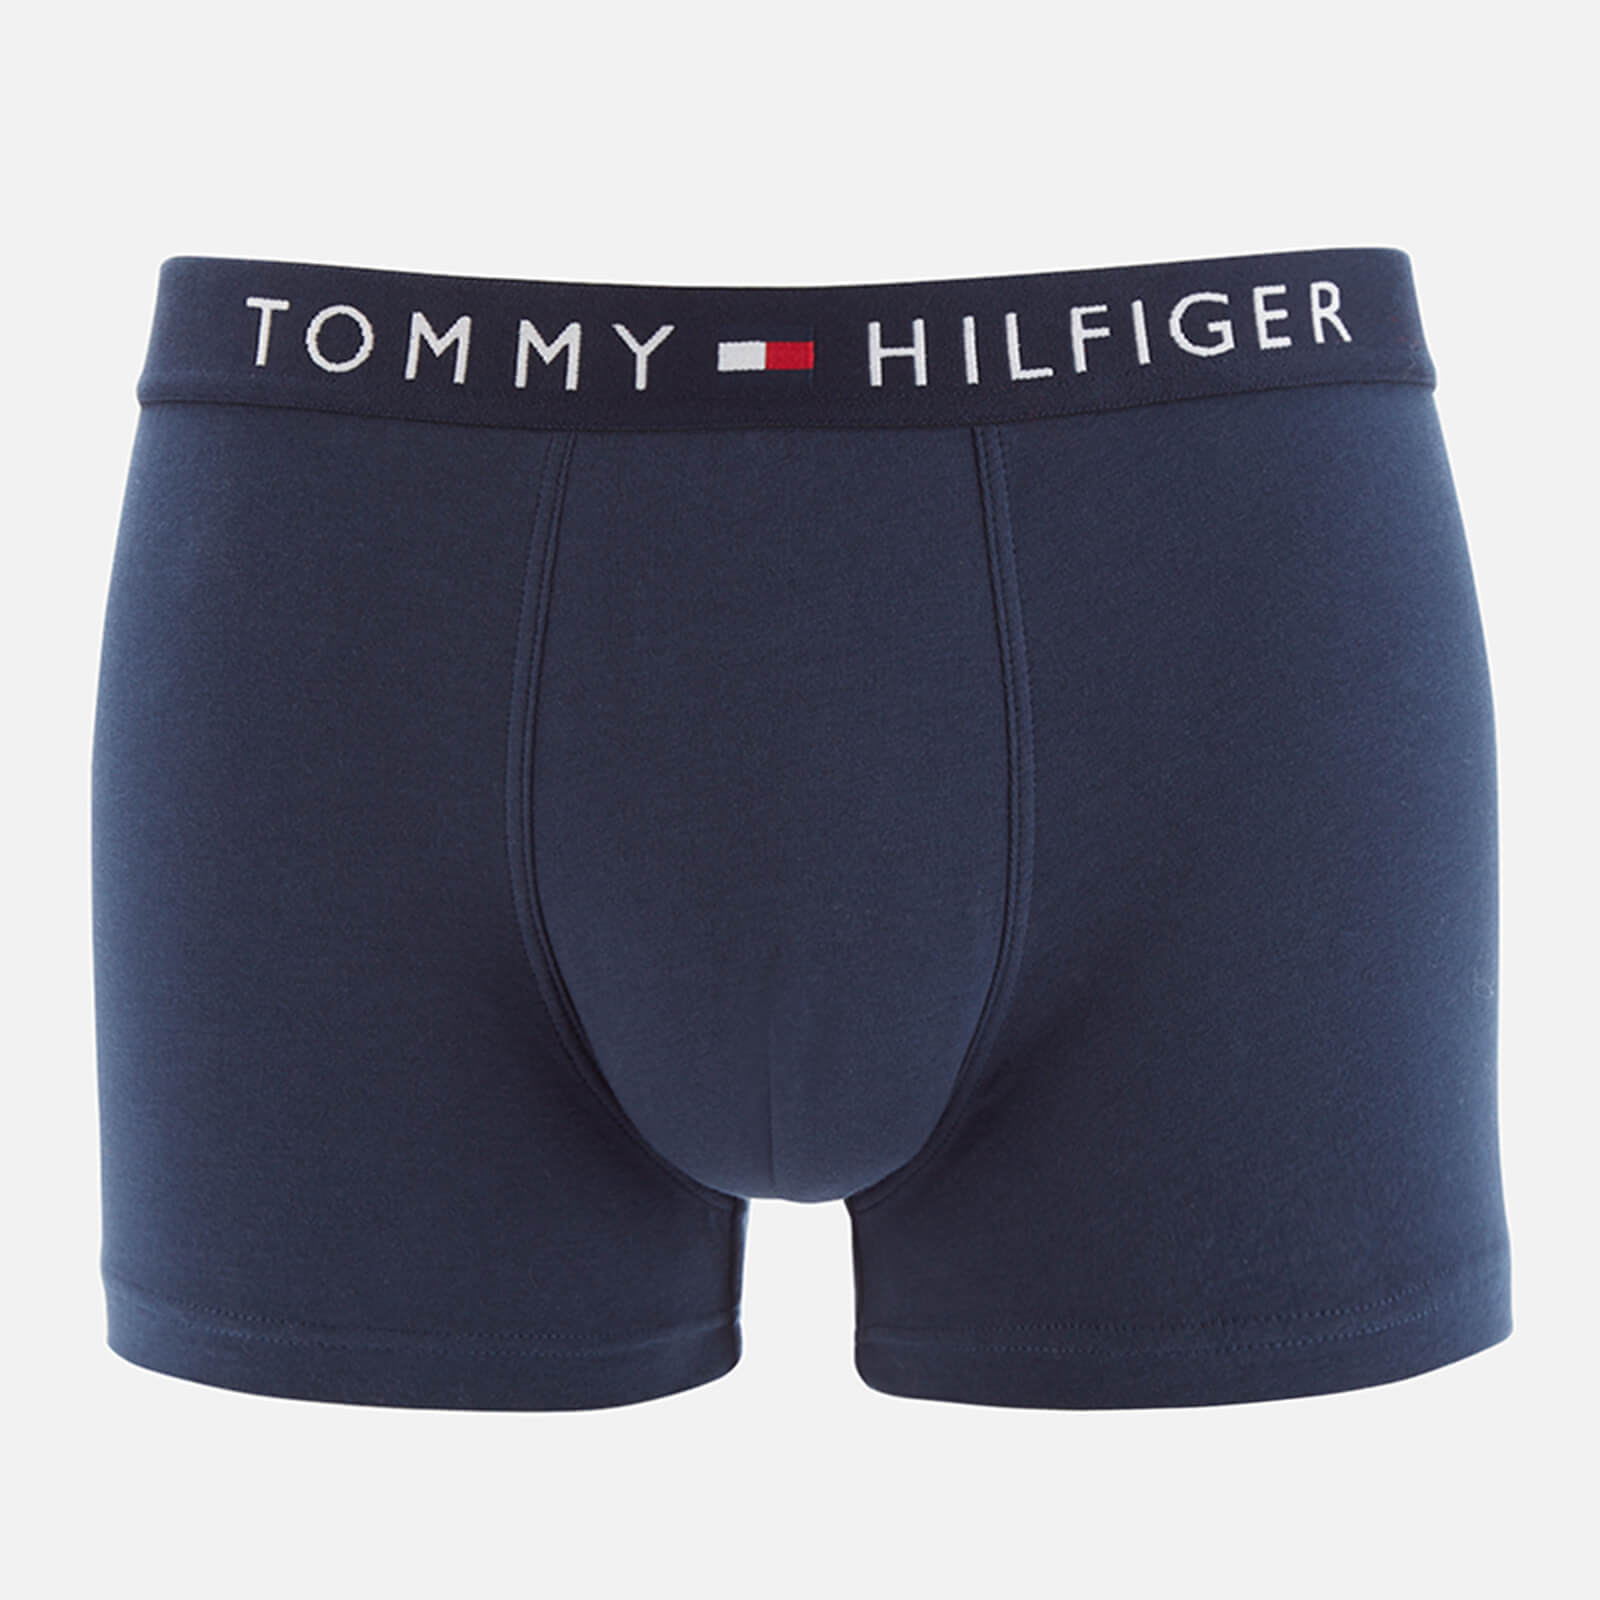 Tommy Hilfiger Men's Logo Trunks - Navy Blazer